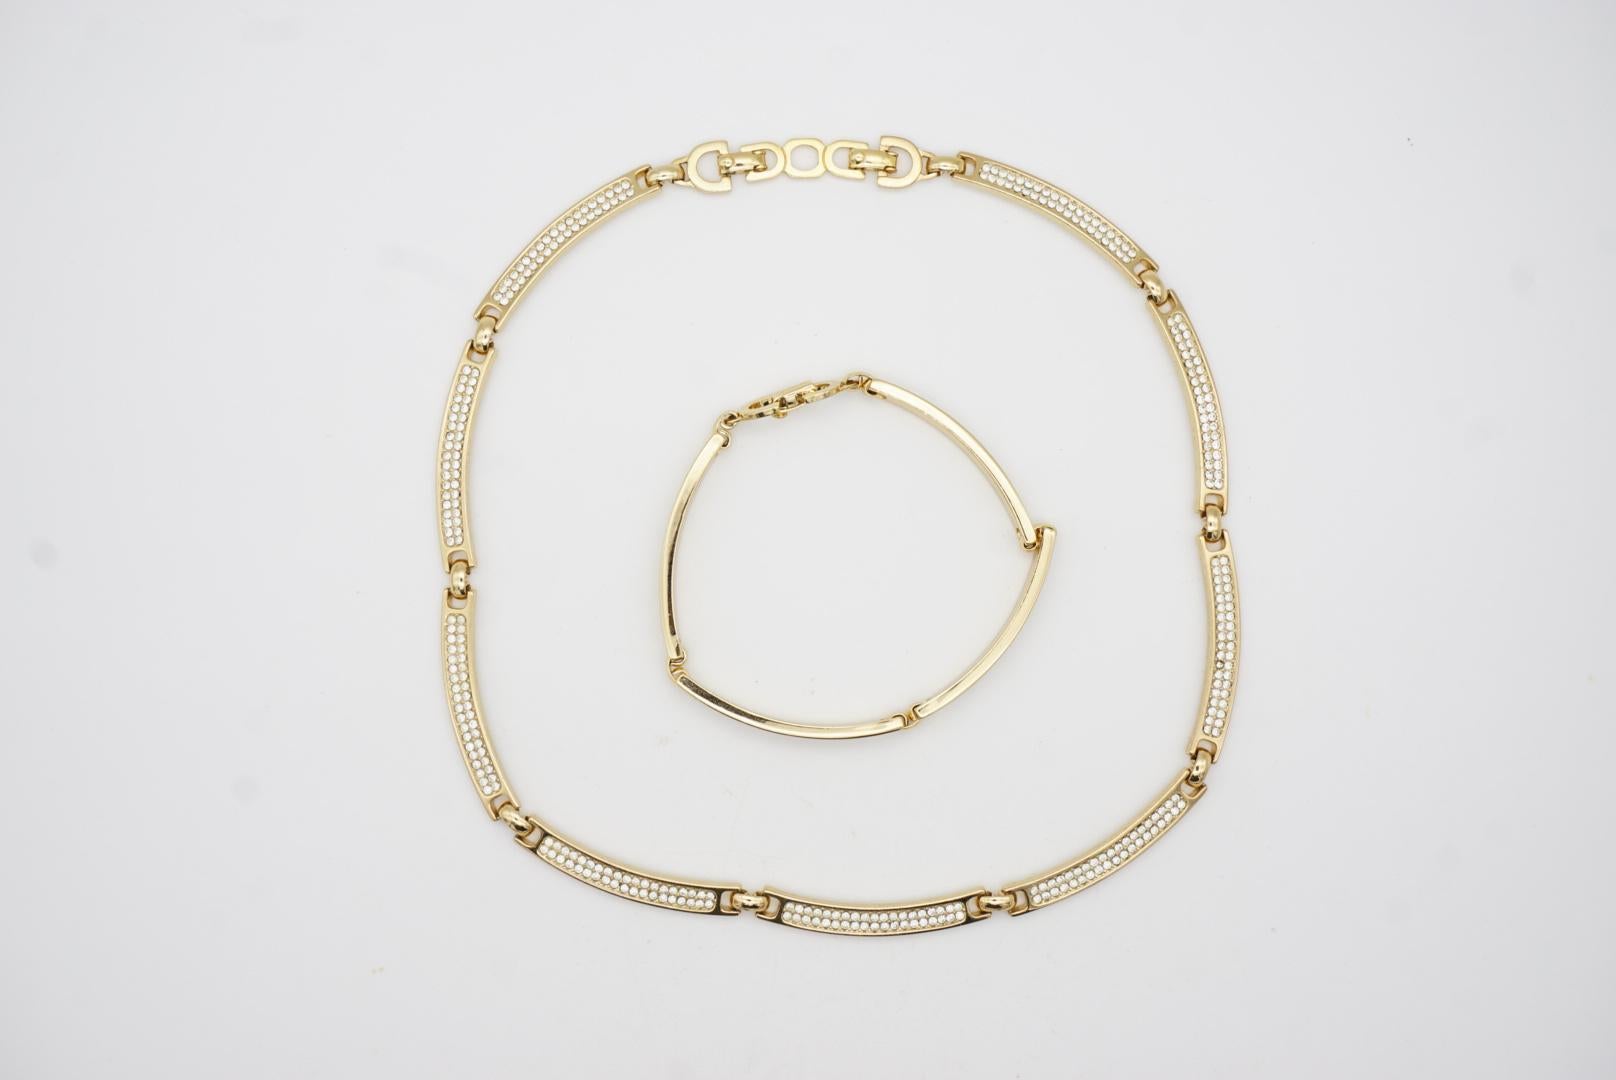 Christian Dior Vintage 1980s Unisex Crystals Interlink Choker Necklace Bracelet For Sale 8